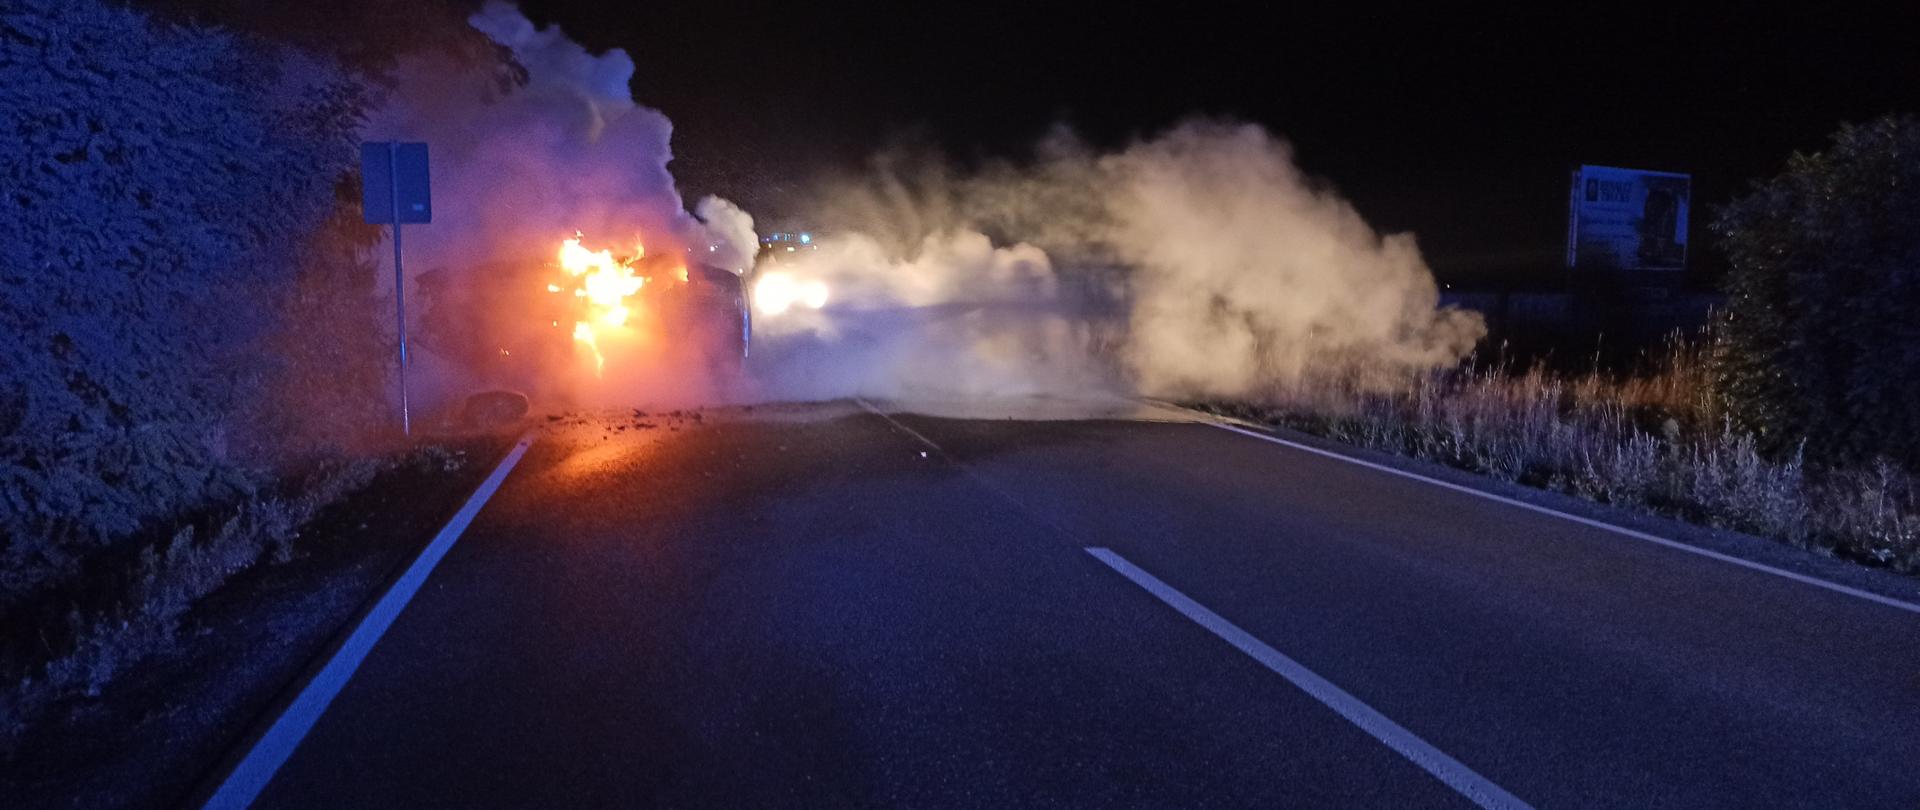 Na zdjęciu widać pożar samochodu osobowego. Panuje silne zadymienie oraz płomienie. Samochód leży na boku na jezdni. Pora nocna. 